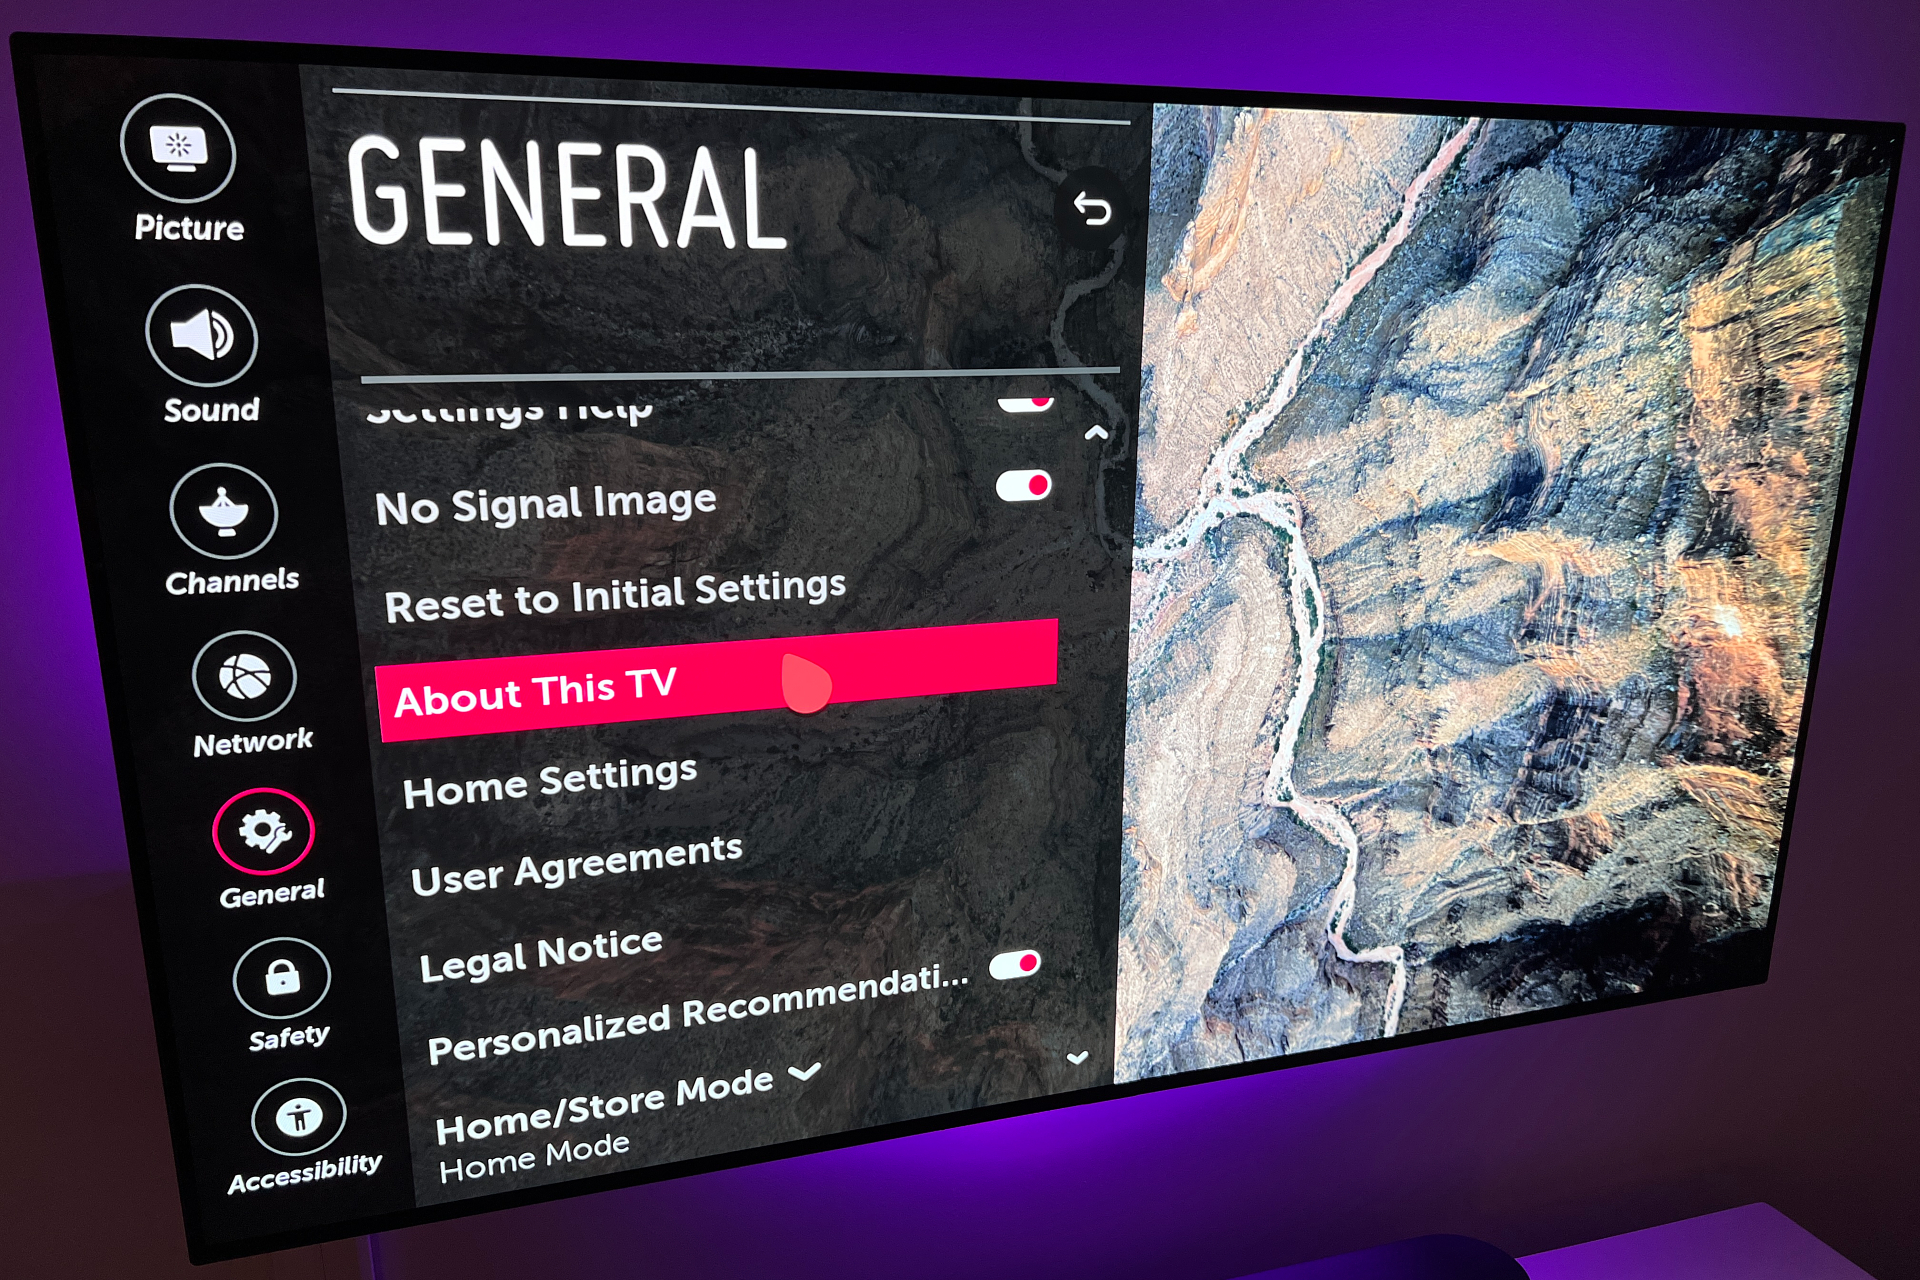 Televisor LG con webOS versión 4 que muestra el menú Acerca de este televisor.